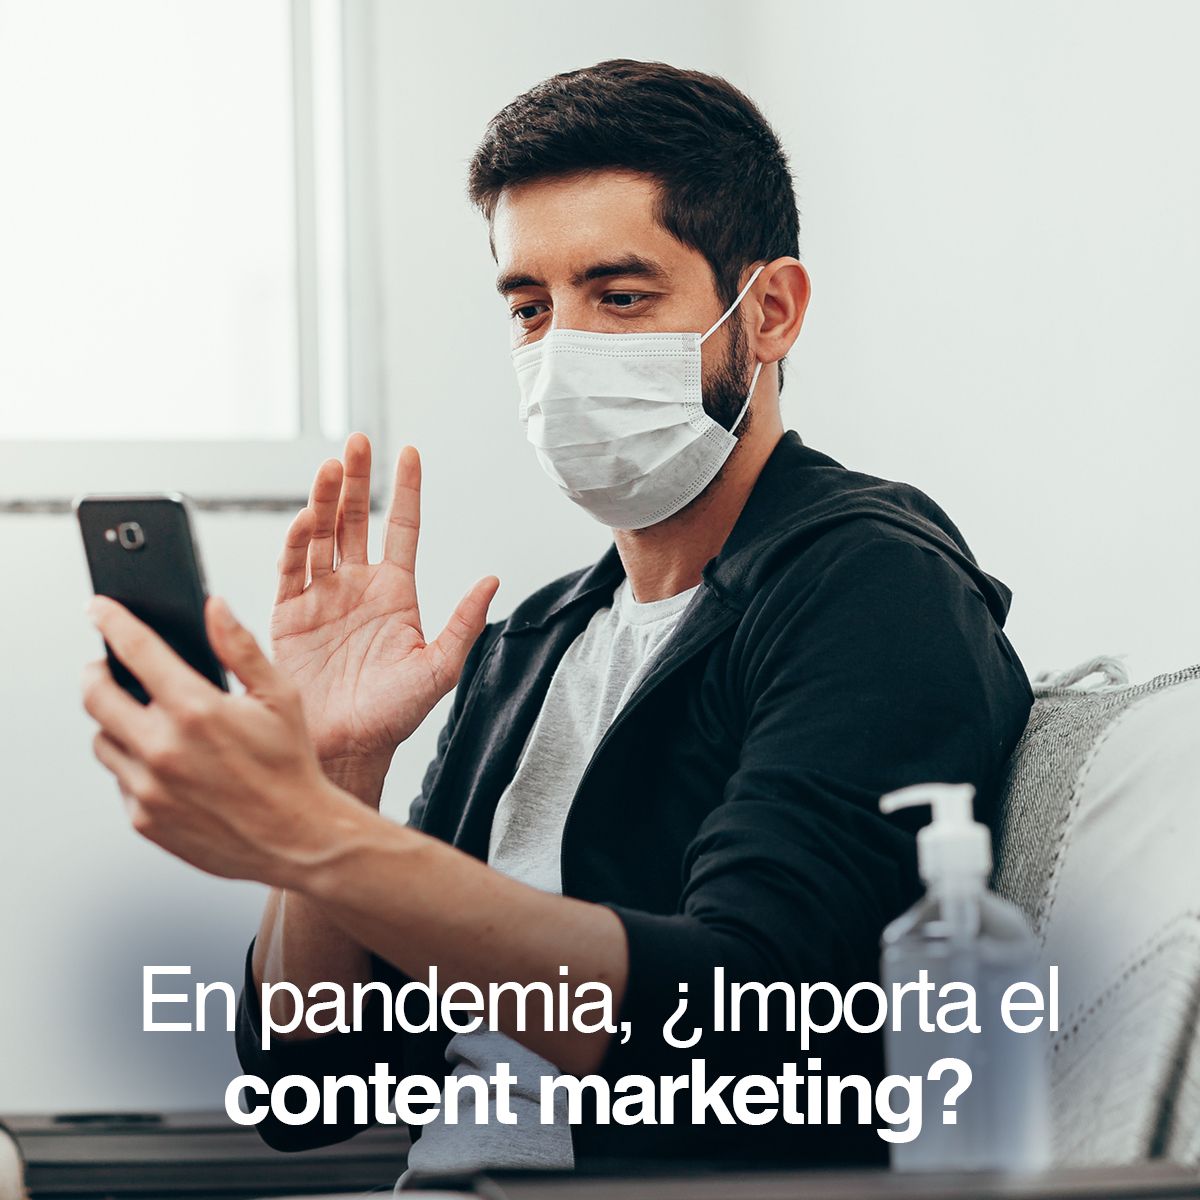 En pandemia, el content marketing en Chile importa mucho